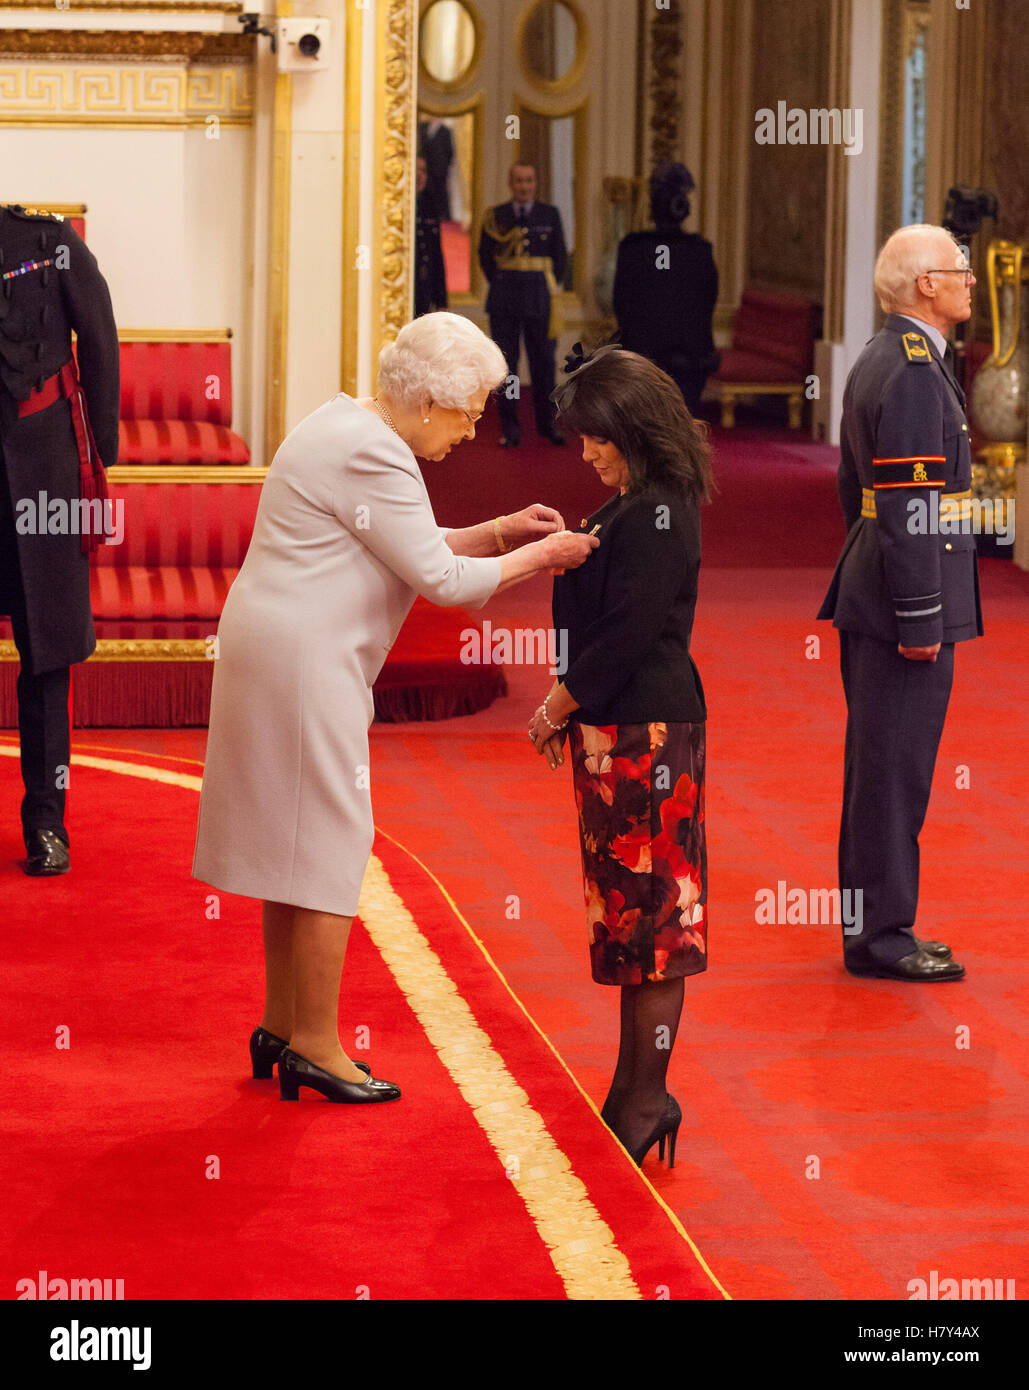 Jayne Senior da Rotherham è realizzato un membro dell'ordine dell'Impero Britannico (MBE) dalla Regina Elisabetta II durante una cerimonia di investitura a Buckingham Palace. Foto Stock